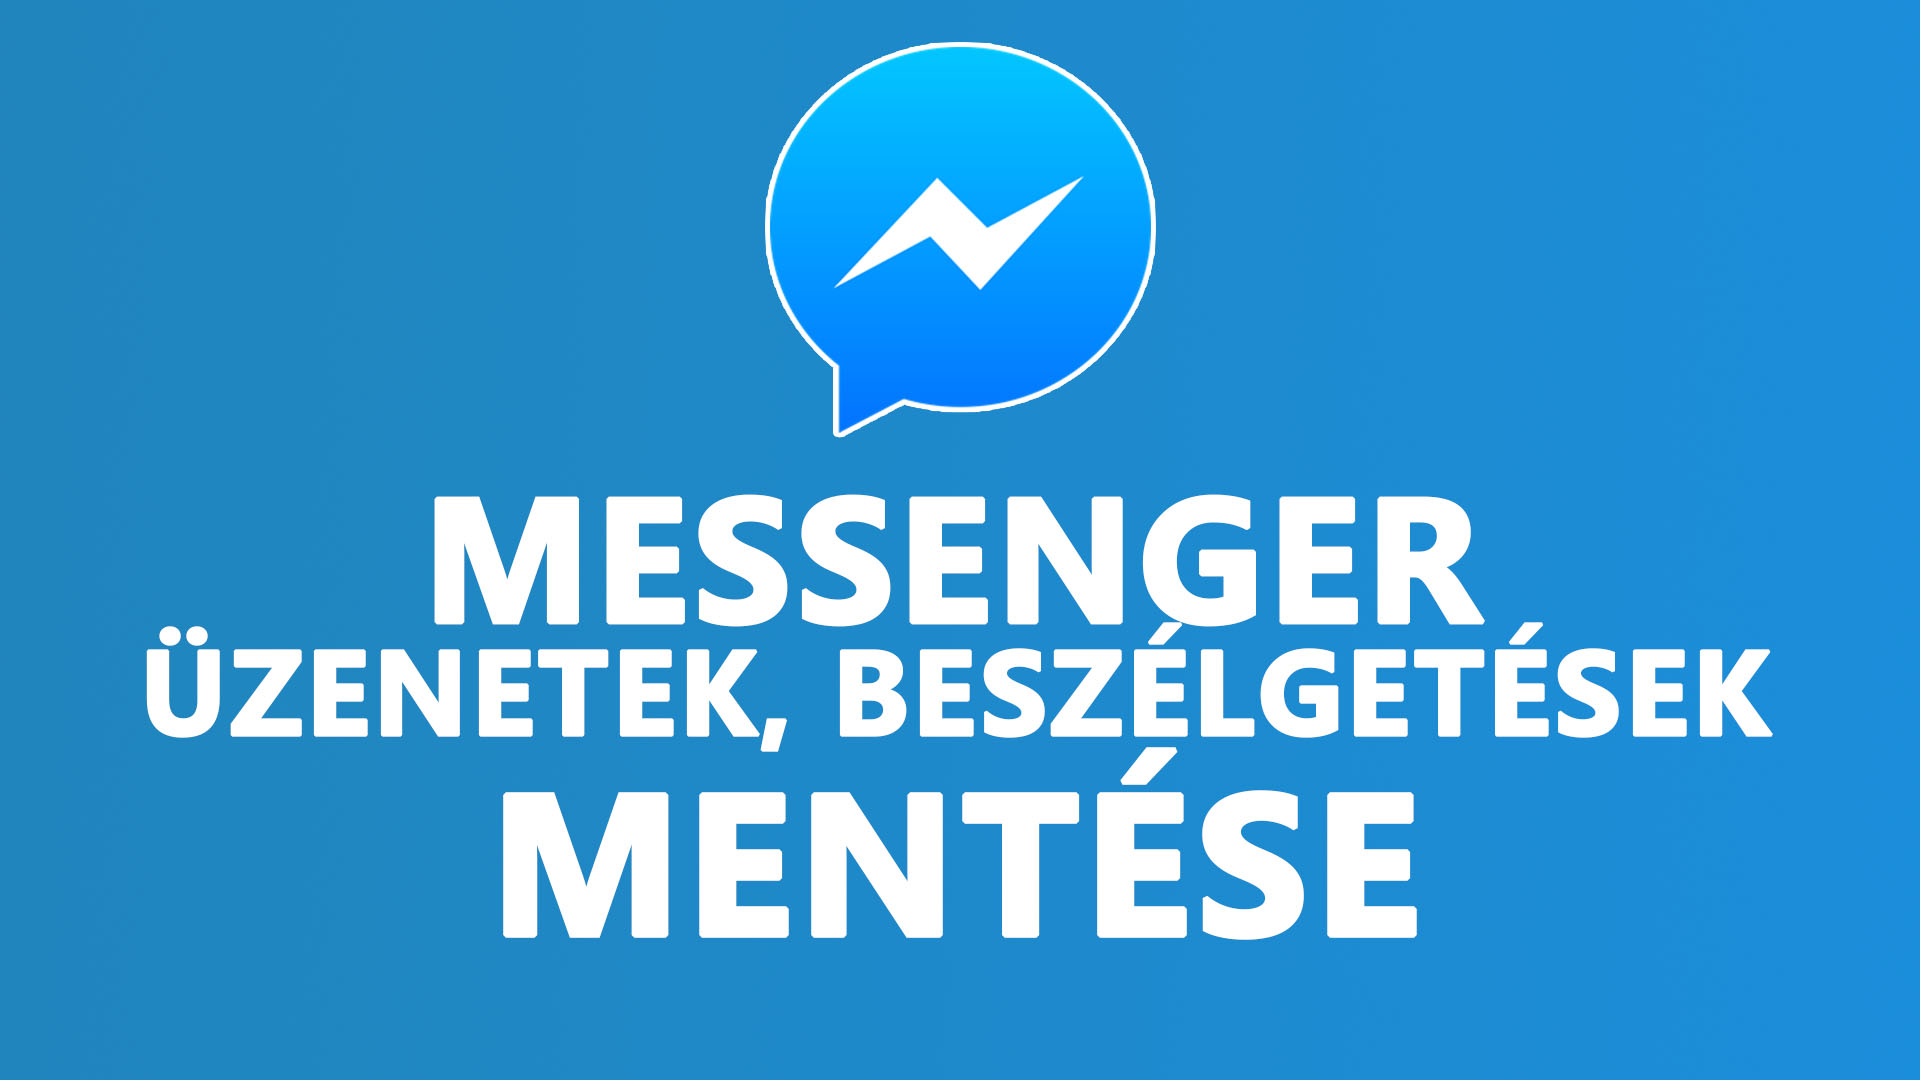 Messenger beszélgetések mentése